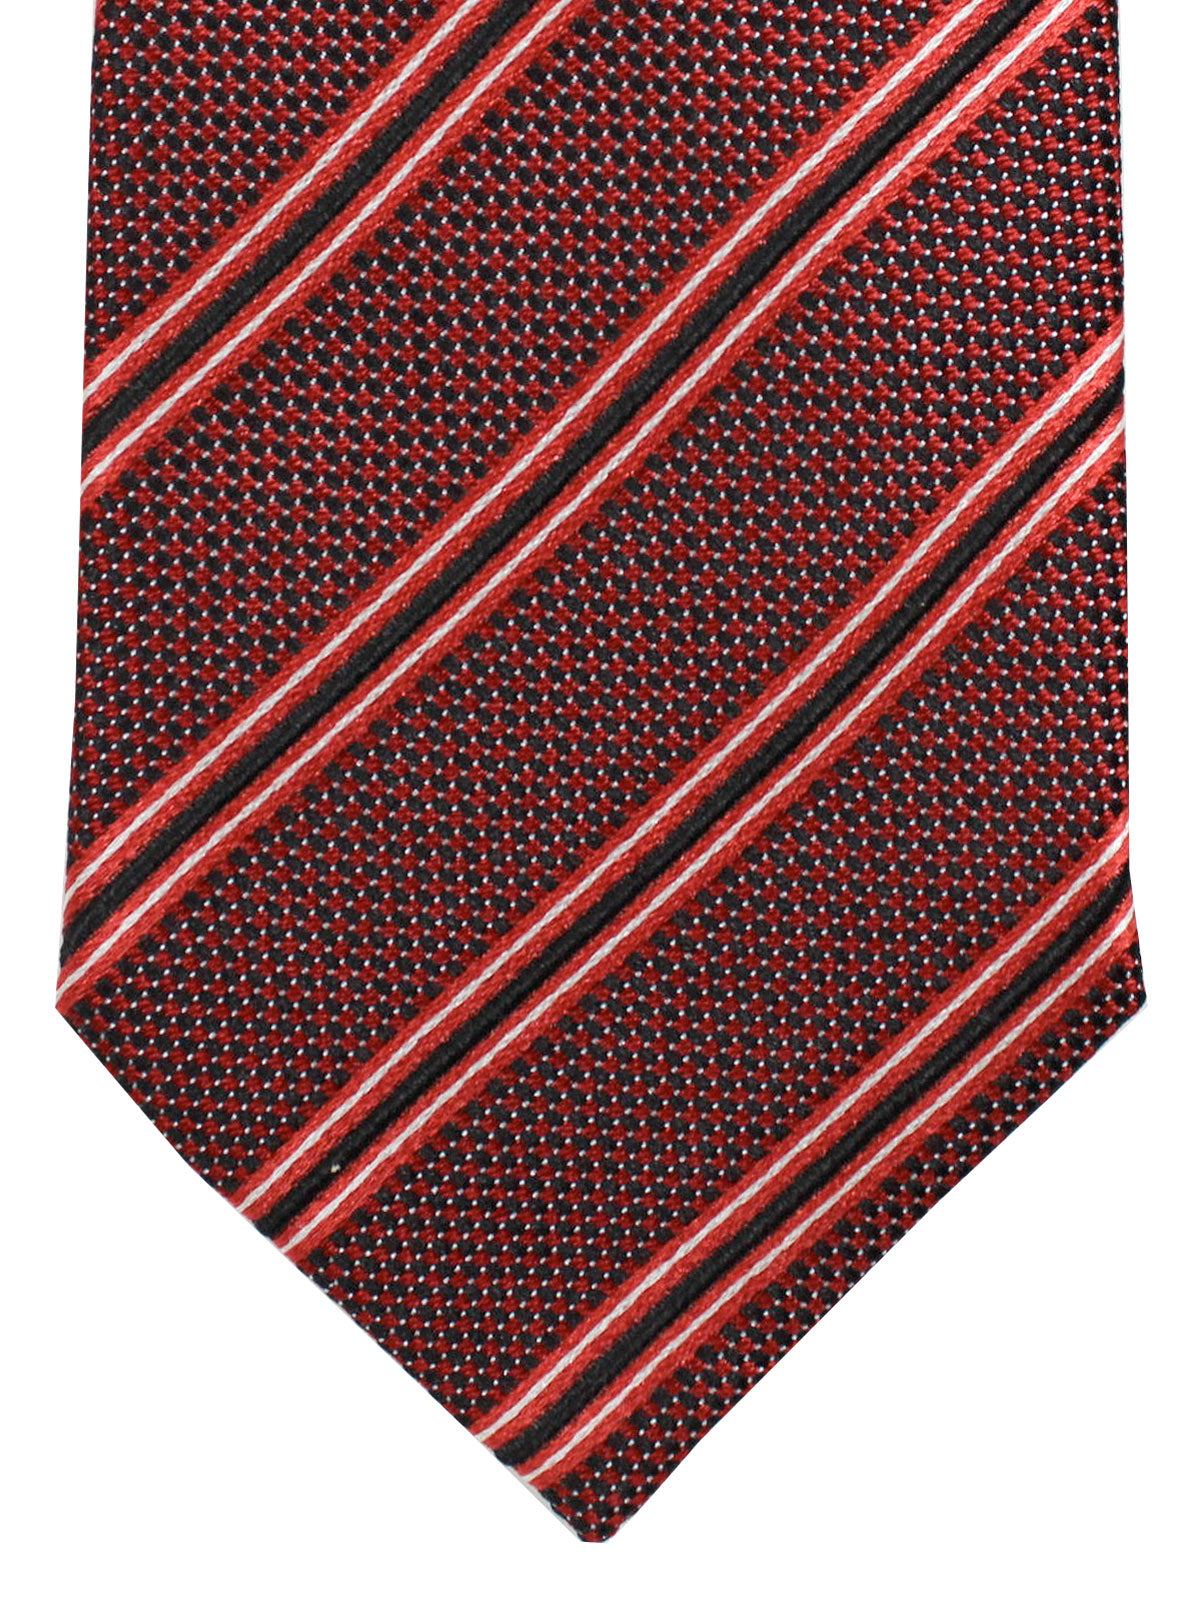 Armani Collezioni Tie Black Red Silver Stripes